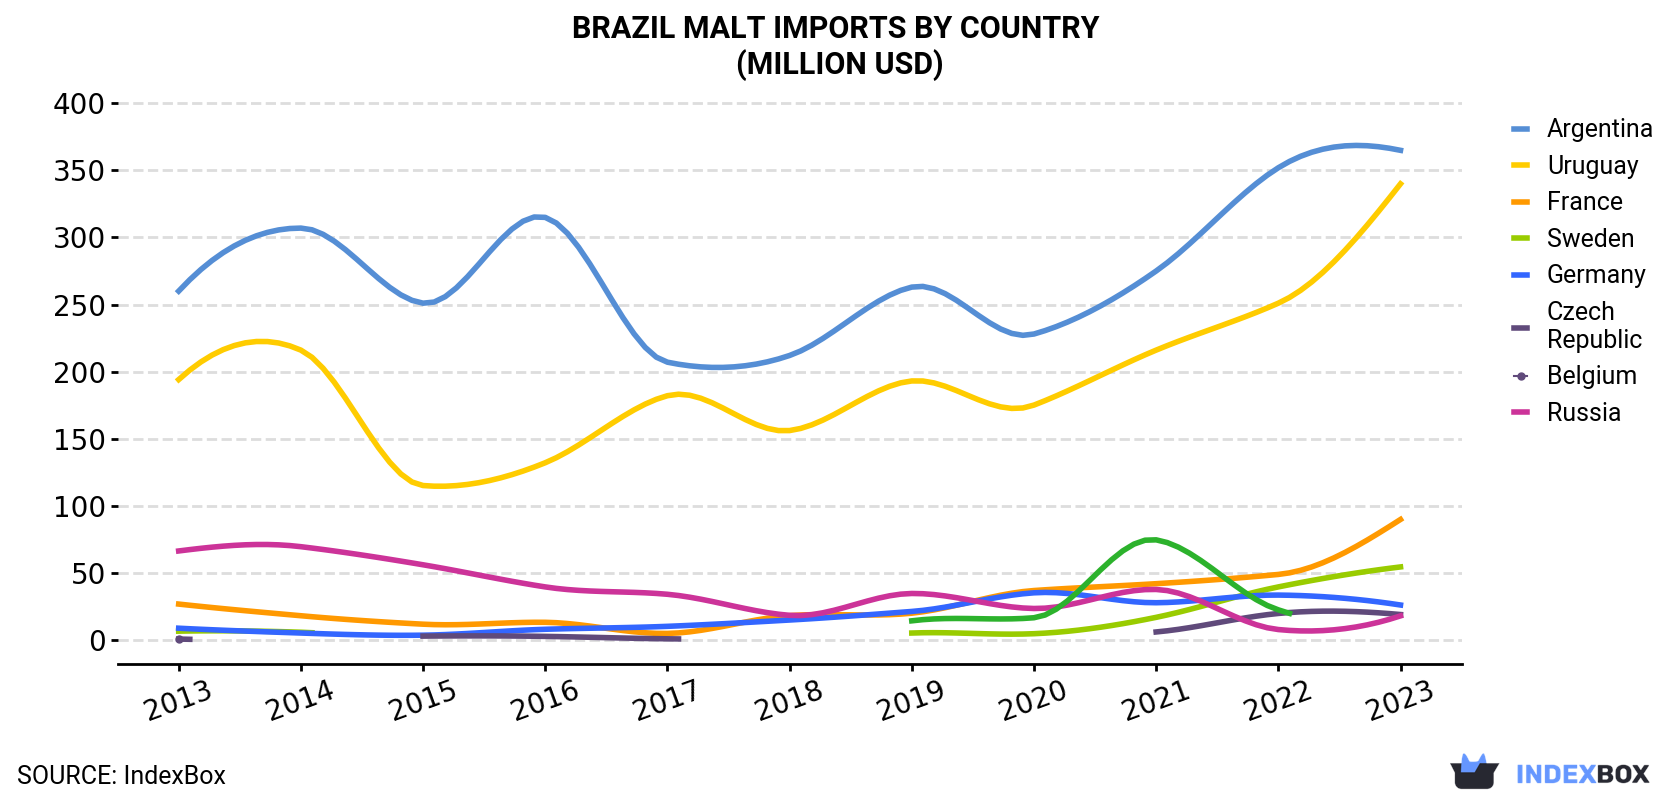 Brazil Malt Imports By Country (Million USD)